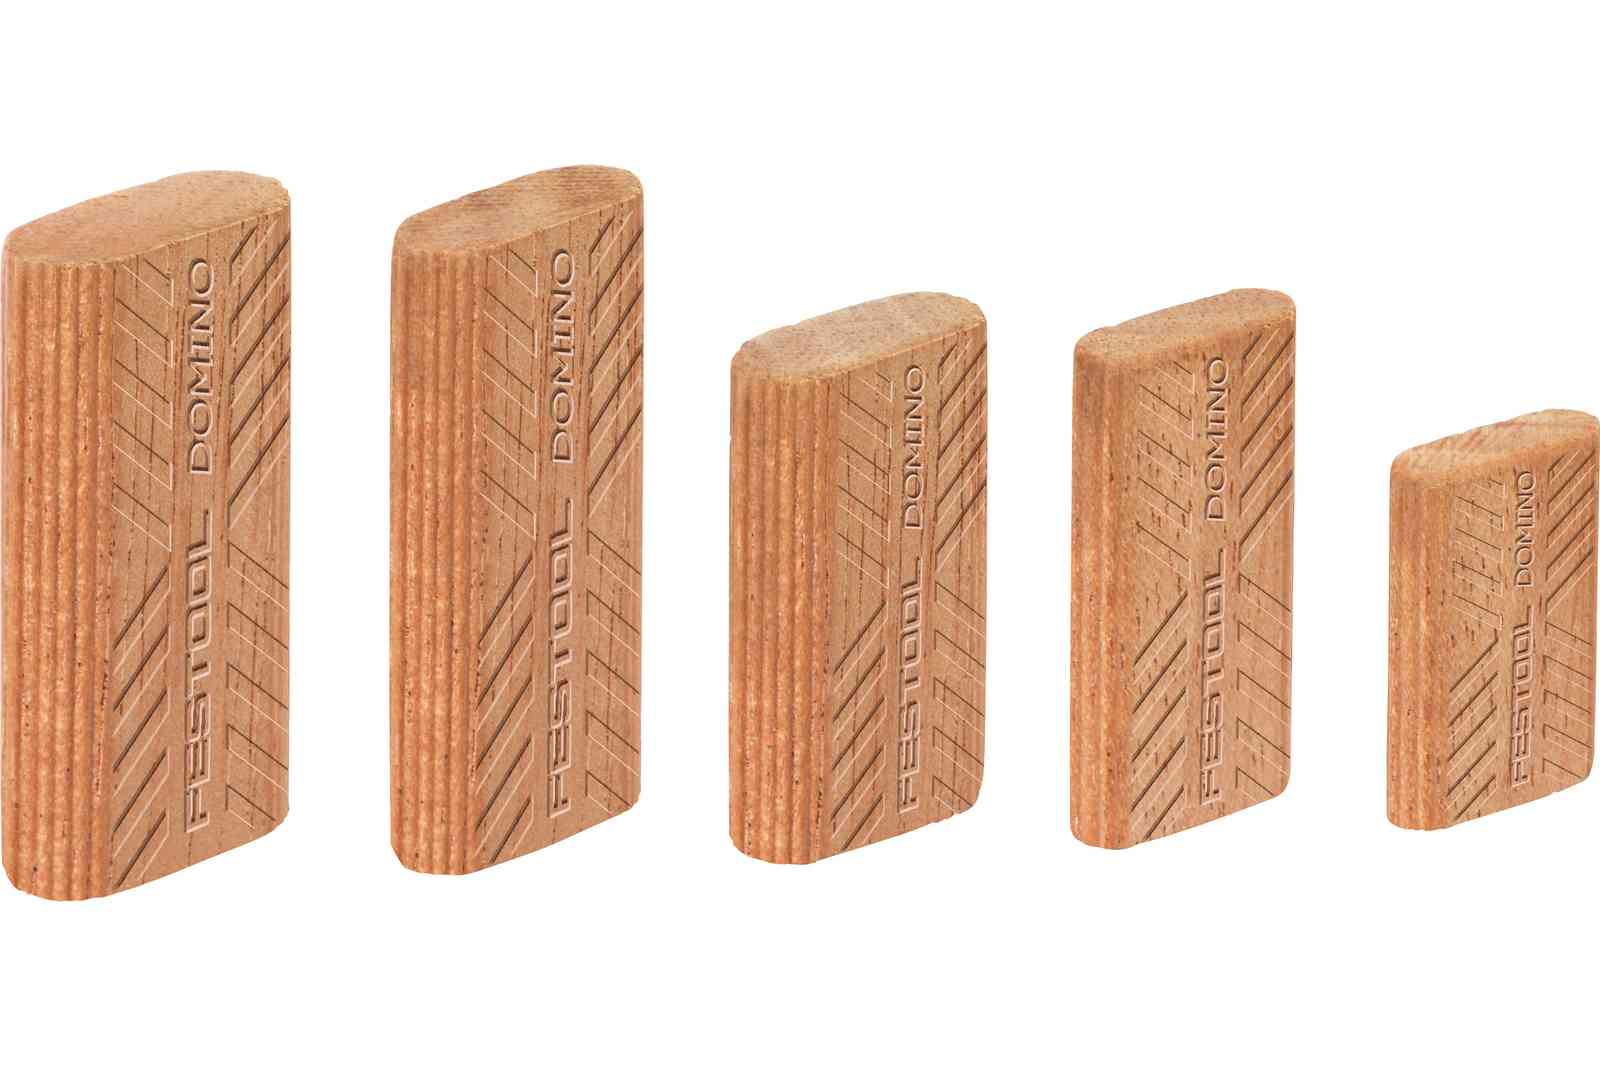 FESTOOL -  Tassello DOMINO spina in legno - dimensioni 8 X 40 - note SIPO - info  840130 MAU SB